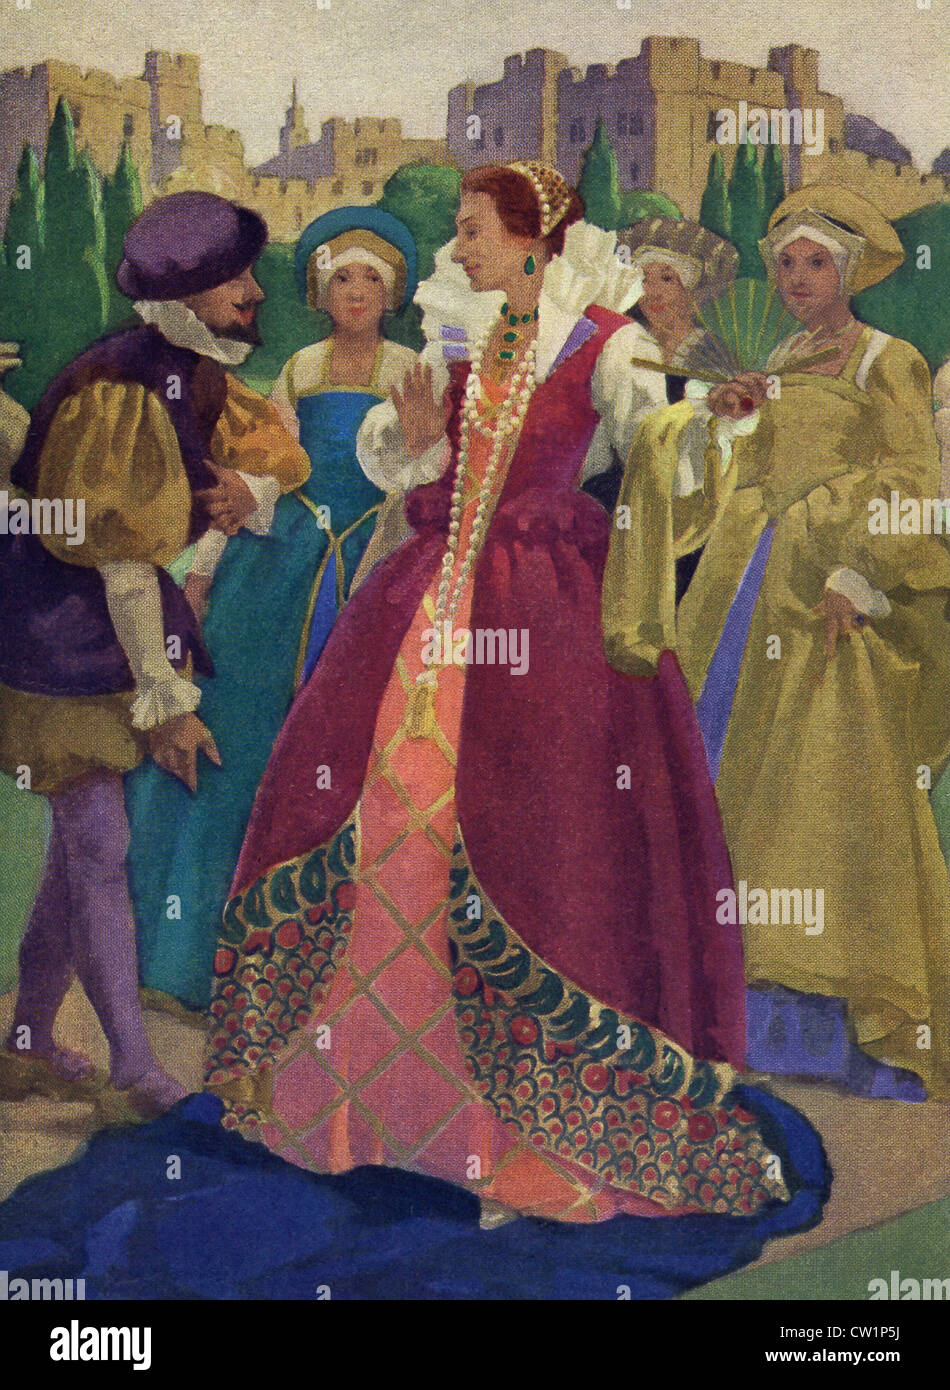 La tradition dit Sir Walter Raleigh mis son manteau au-dessus d'une flaque de boue pour prévenir Elizabeth I de brouiller ses chaussures. Banque D'Images